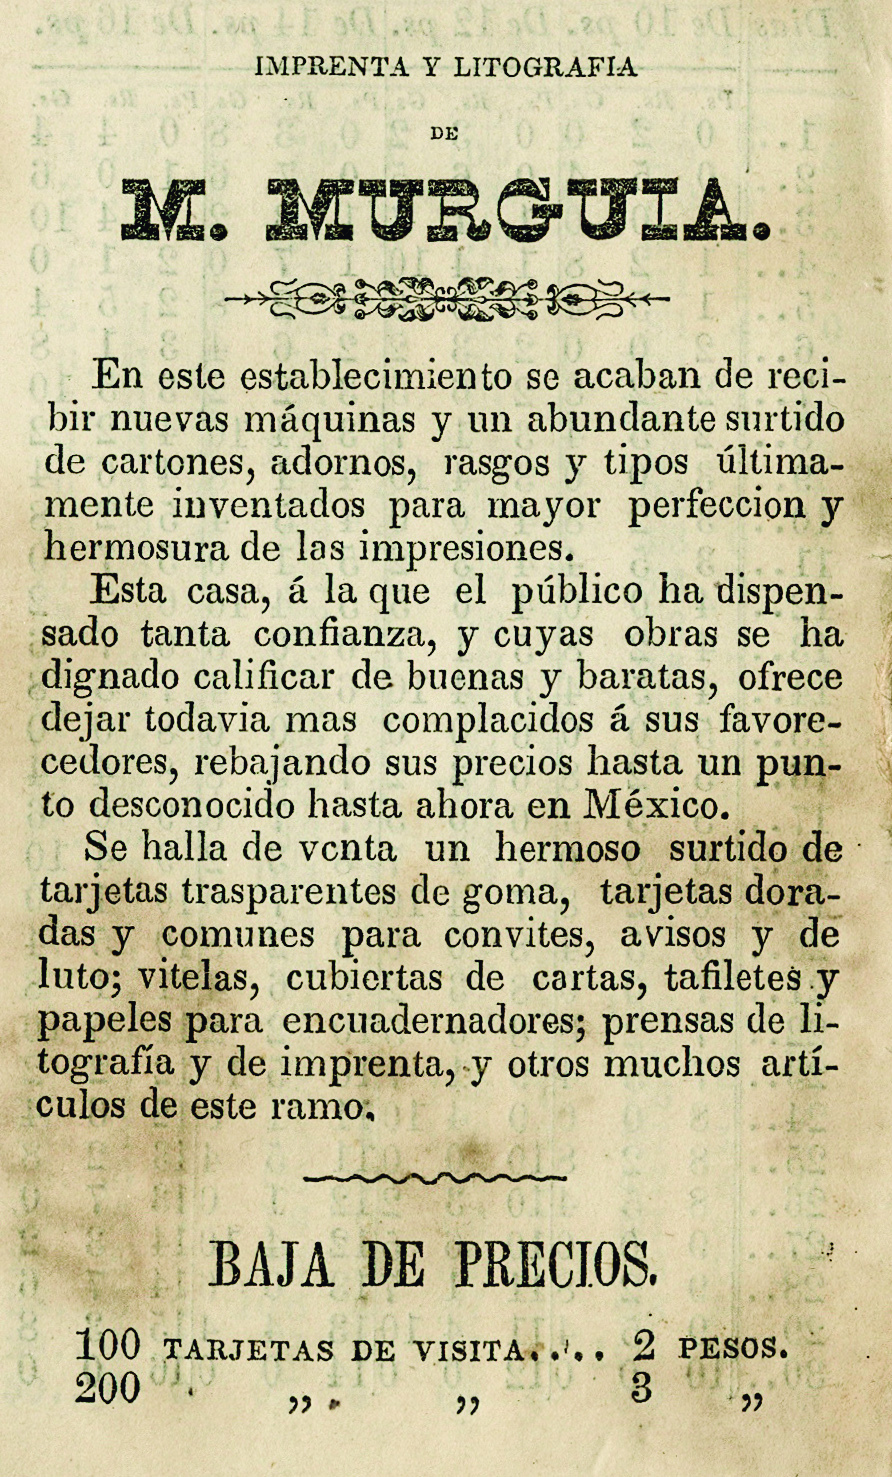 Calendario de M Murguia para el año bisiesto 1852.